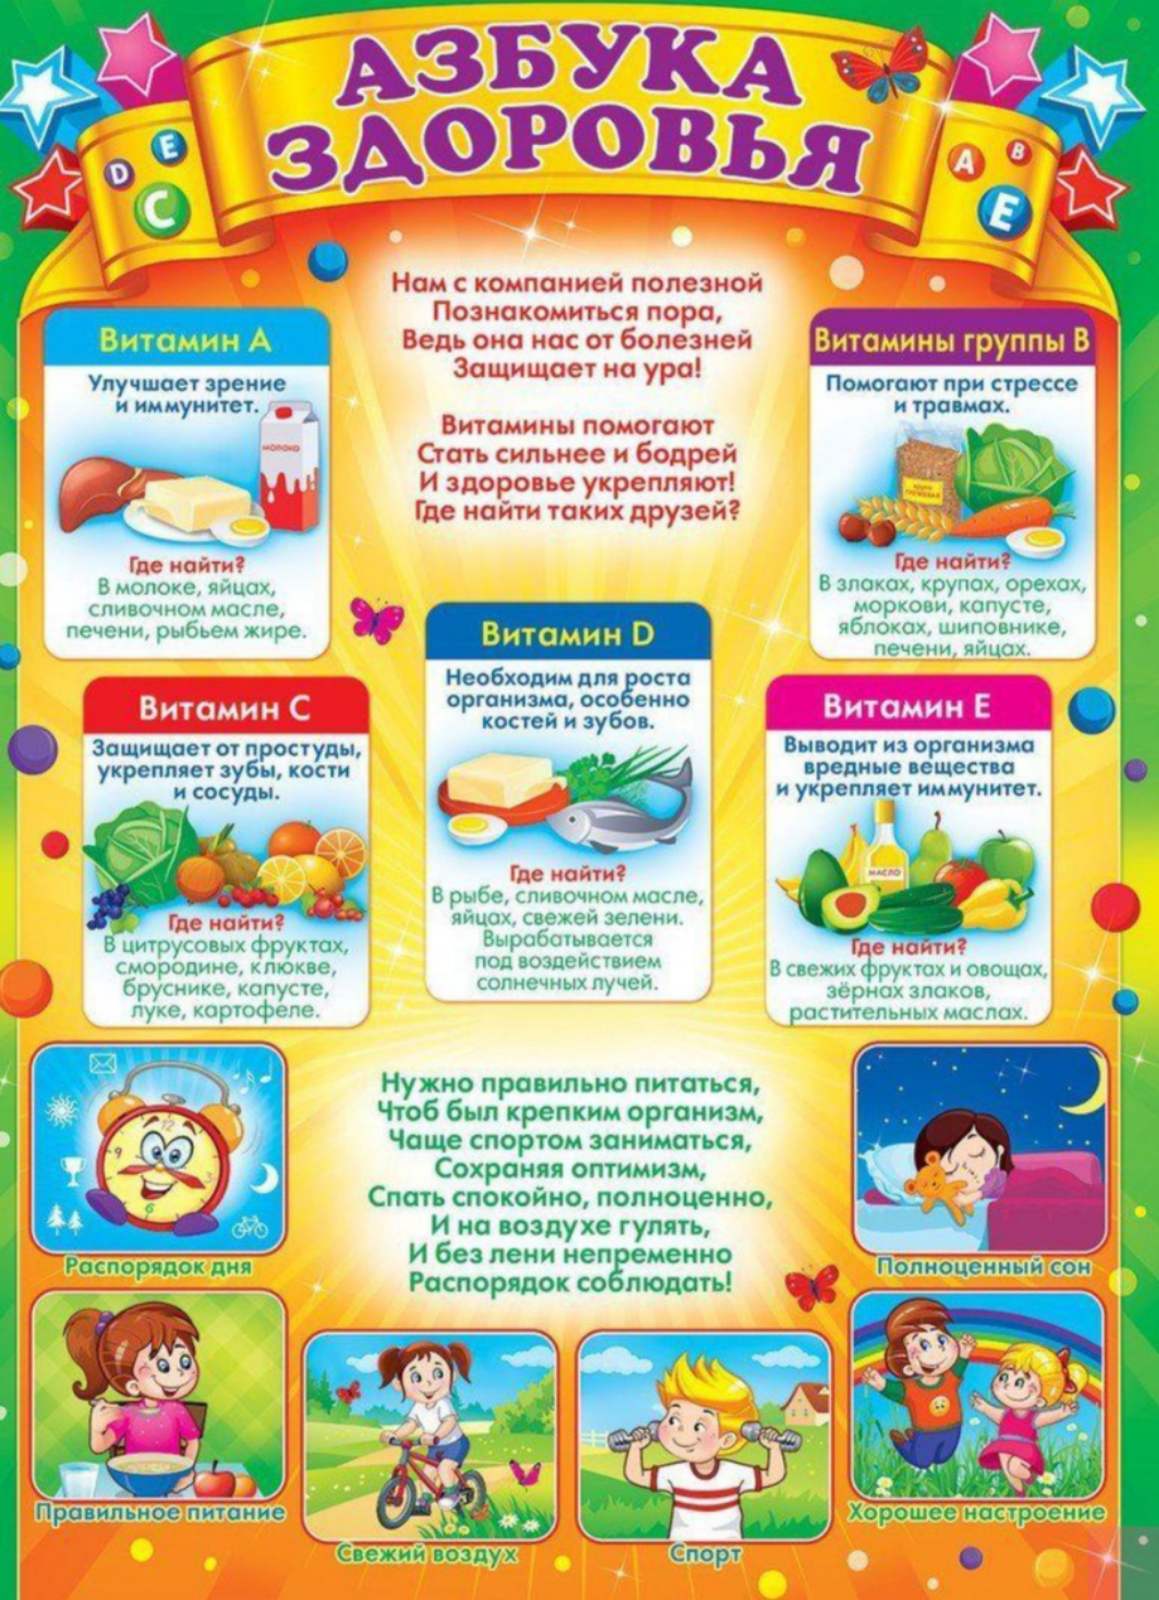 Информация про детский сад. Азбука здоровья. Уголок здоровья в детском саду. Материал для уголка здоровья. Плакаты для детского сада.